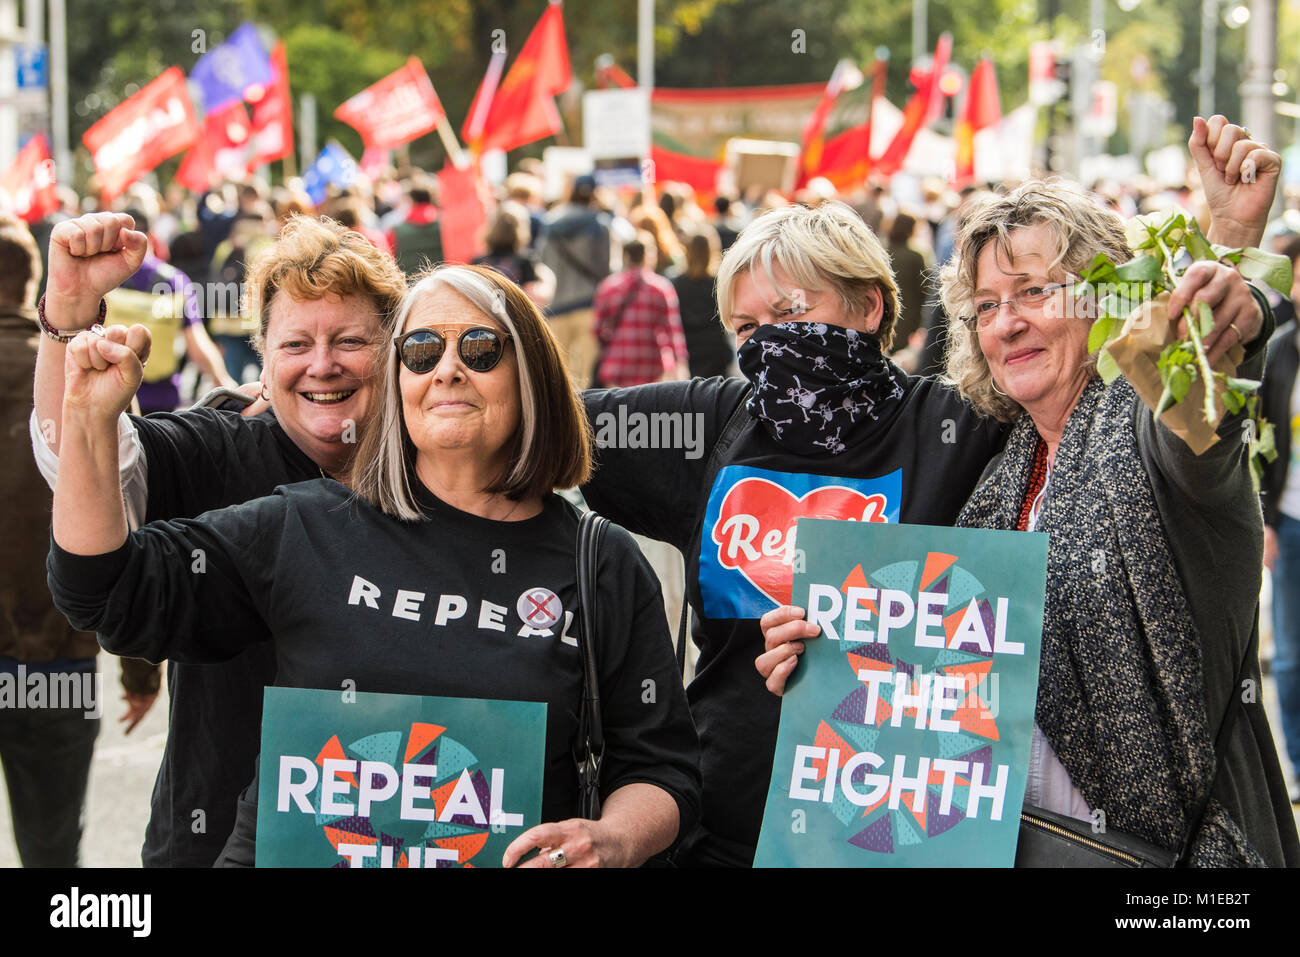 Aufhebung der 8. Änderung der irischen Verfassung. Pro-choice (Abtreibung) Rallye in Dublin, Irland Stockfoto